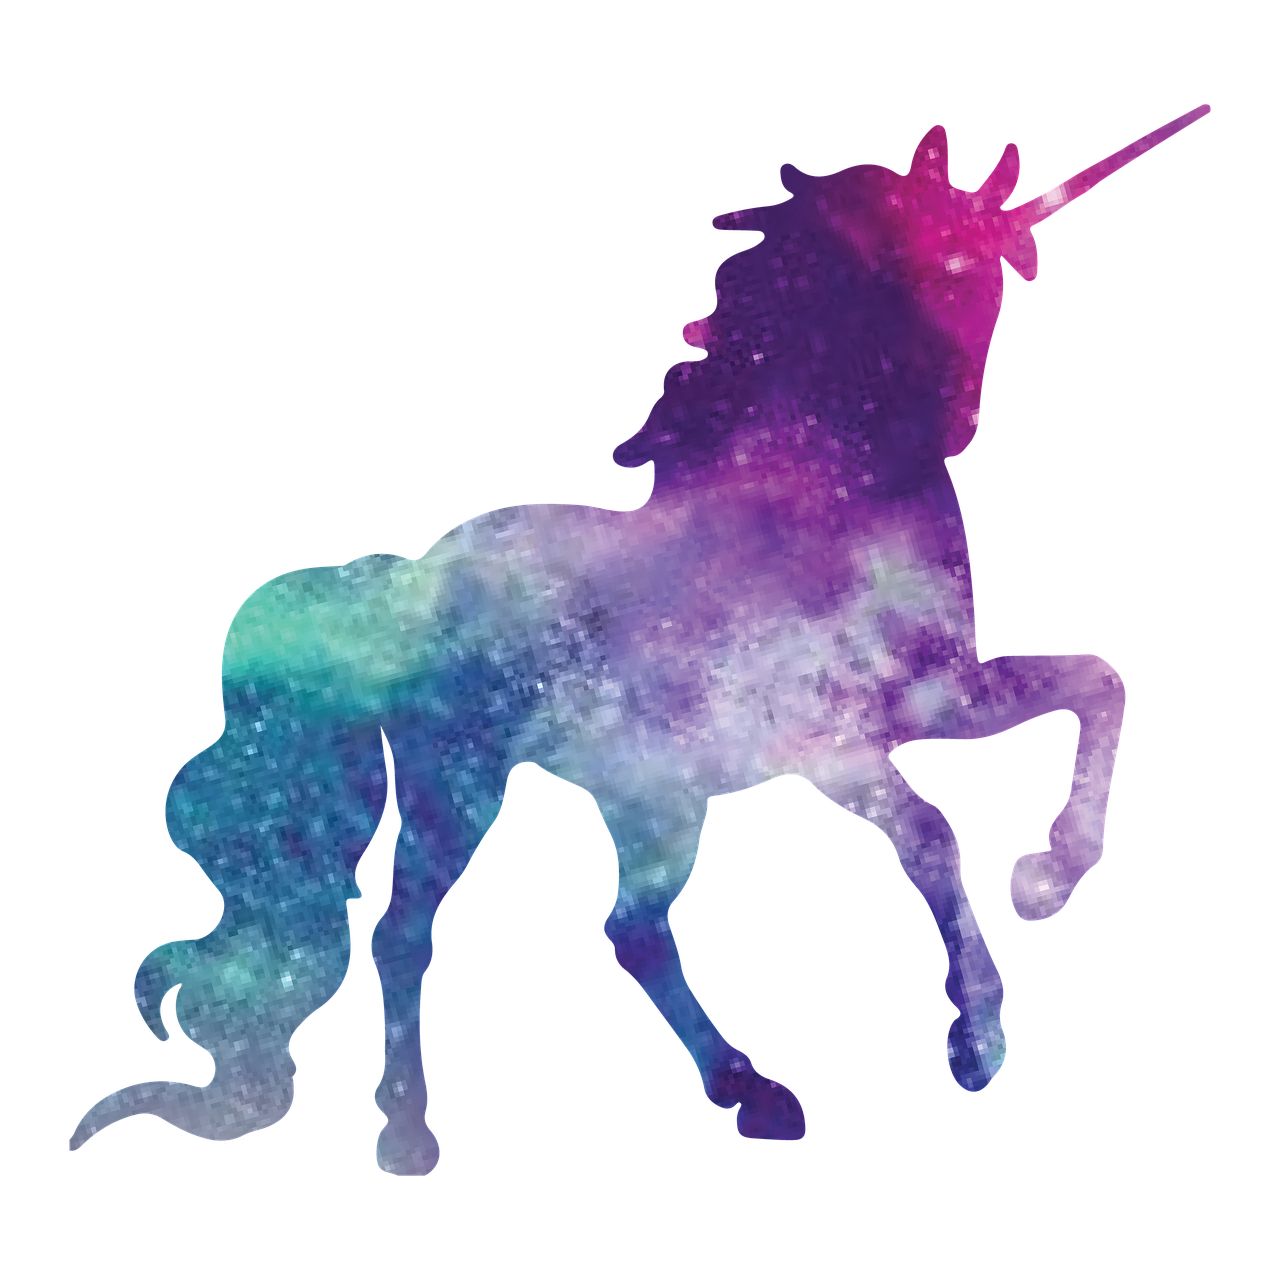 Free image on pixabay. Clipart stars unicorn